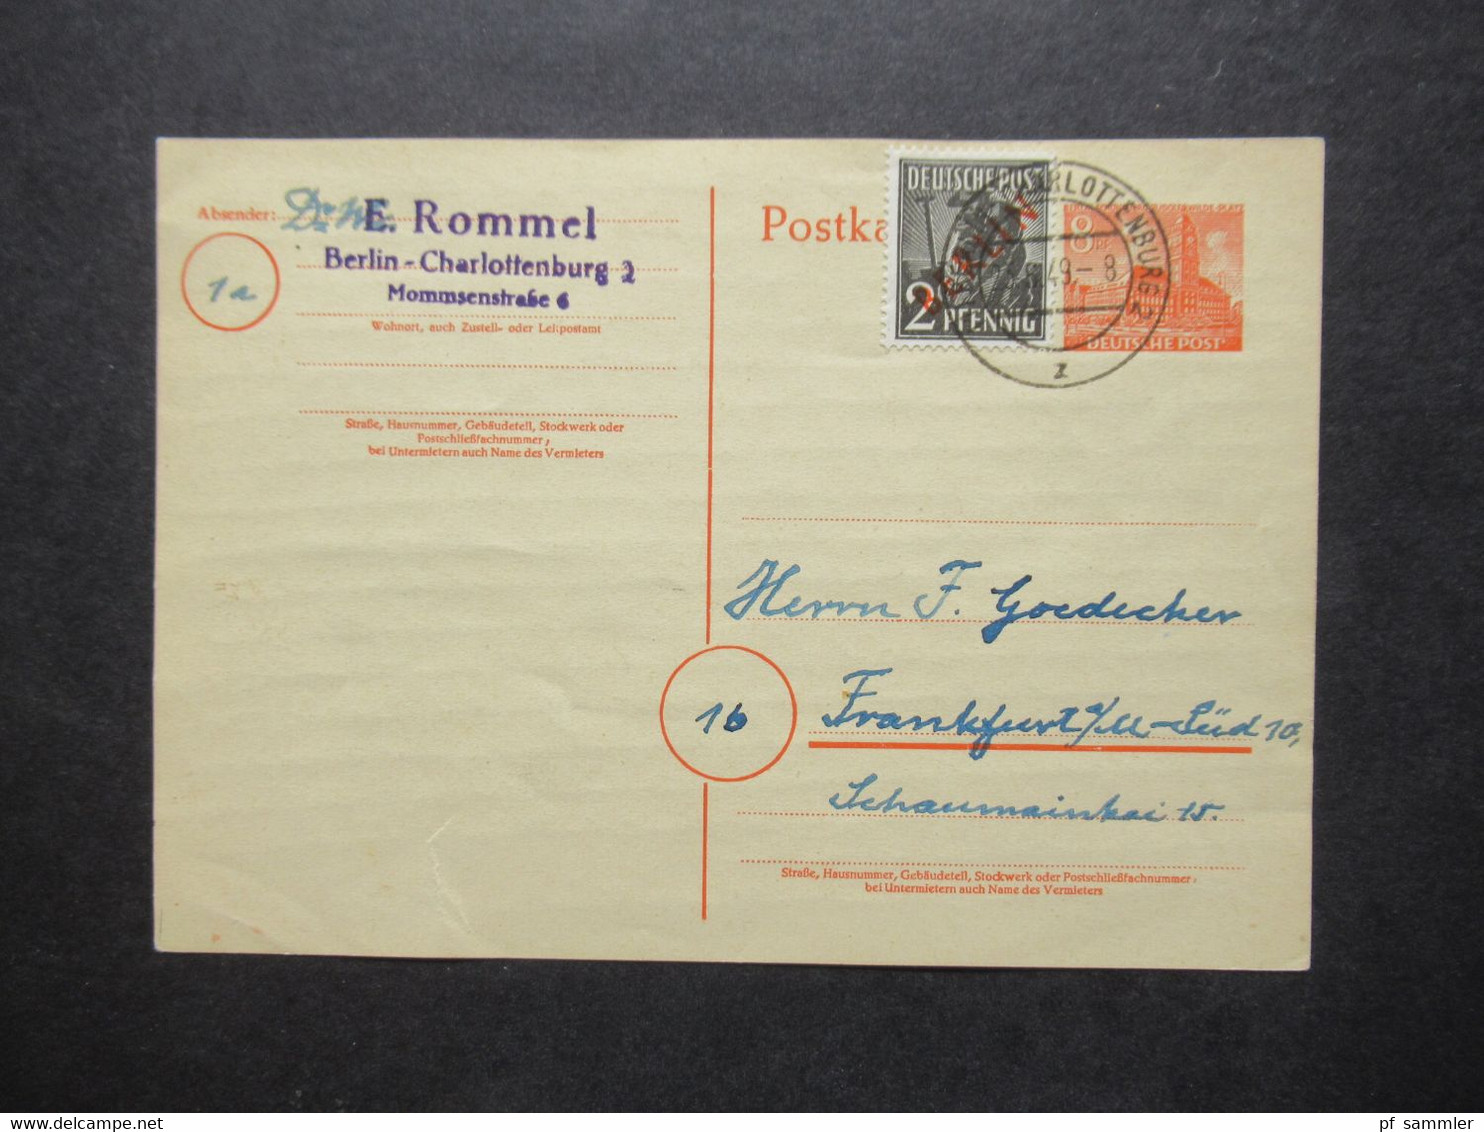 Berlin (West) 1949 GA P 4a Mit Zusatzfrankatur Rotaufdruck Als Fern PK Berlin - FFM Absender Dr. W. Rommel - Postales - Usados